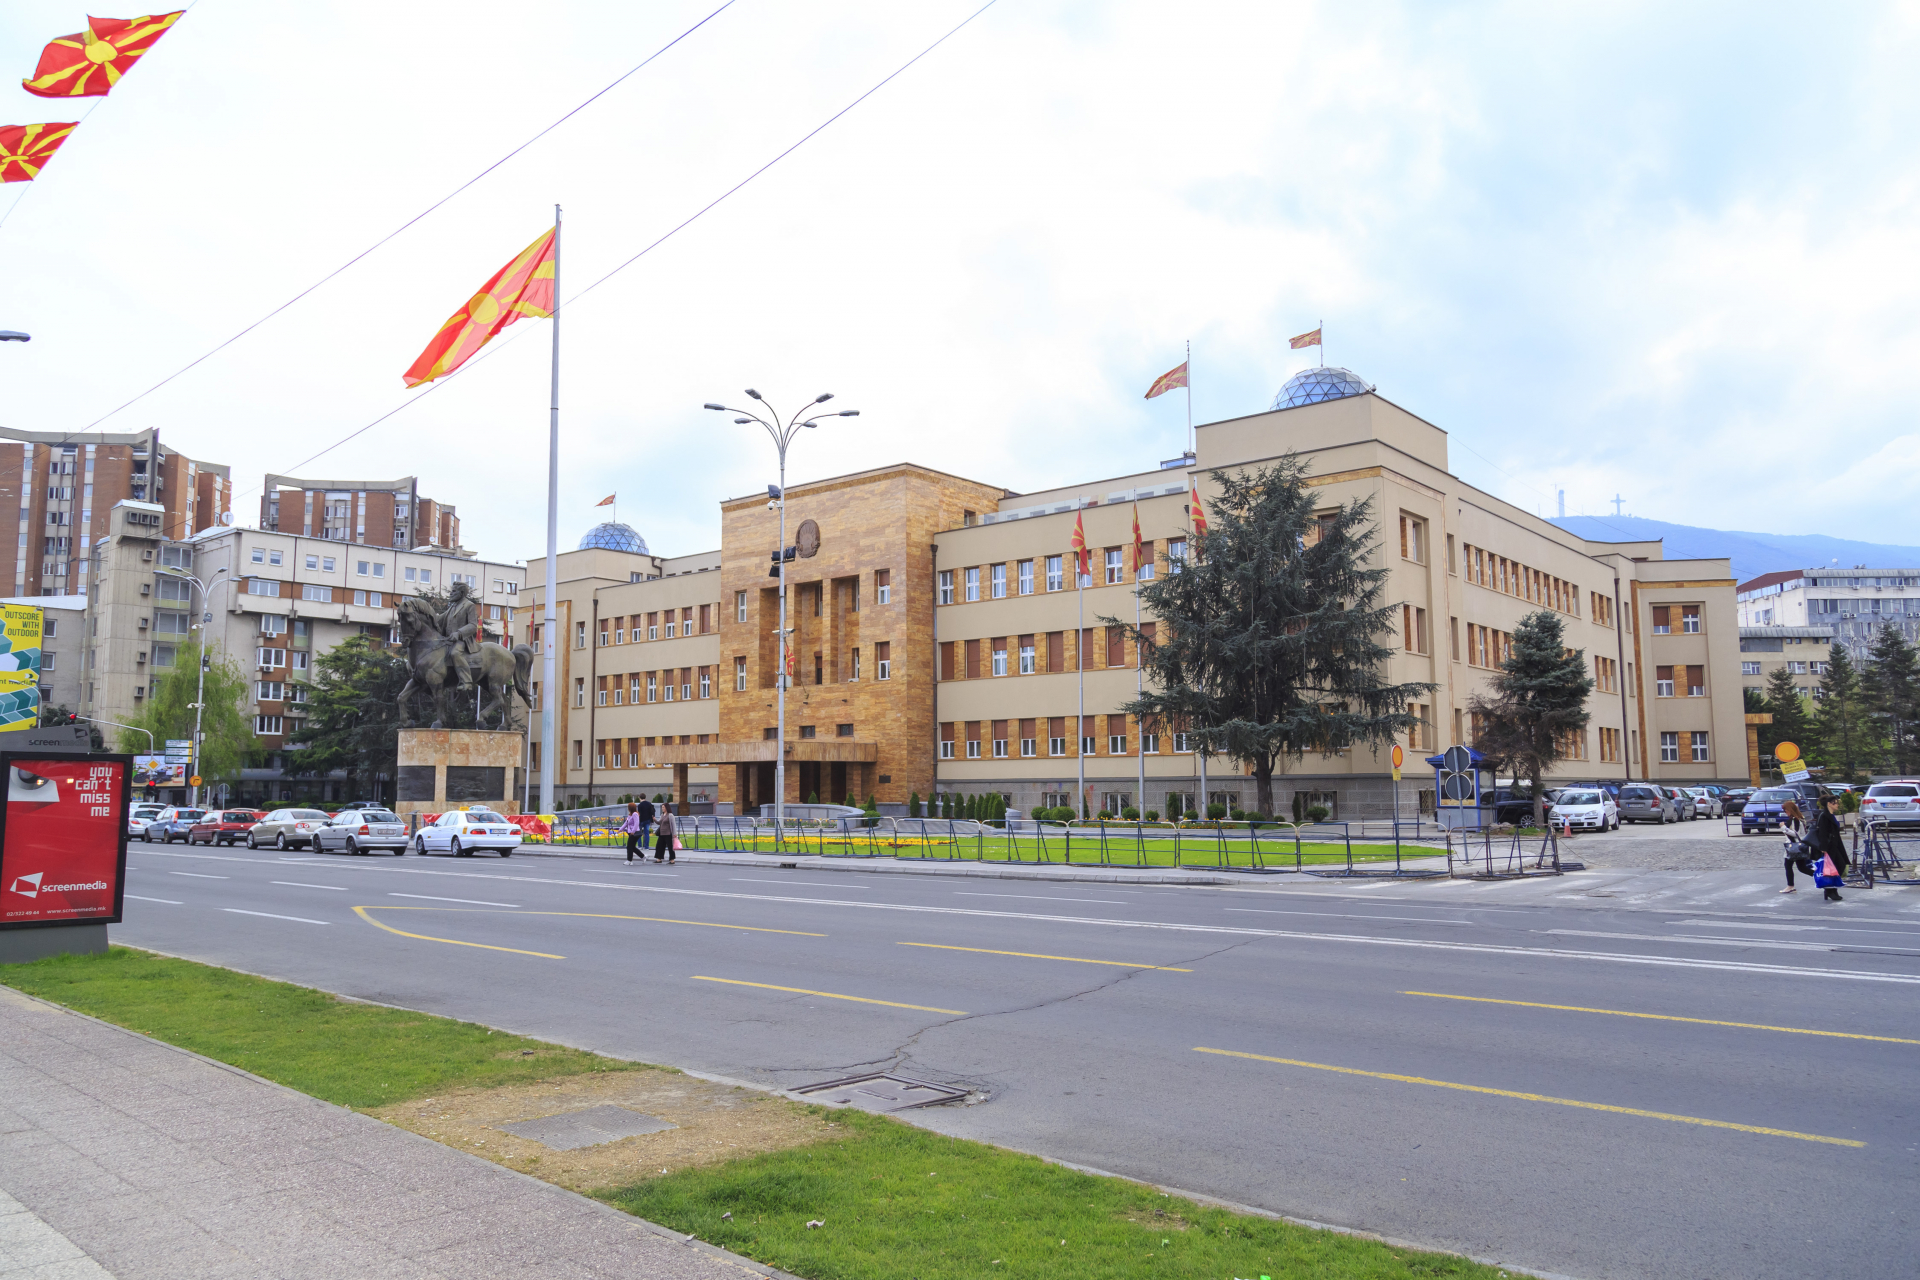 Скопие въздейства върху българските малцинства в съседни държави, за да се припознаят като "македонски"